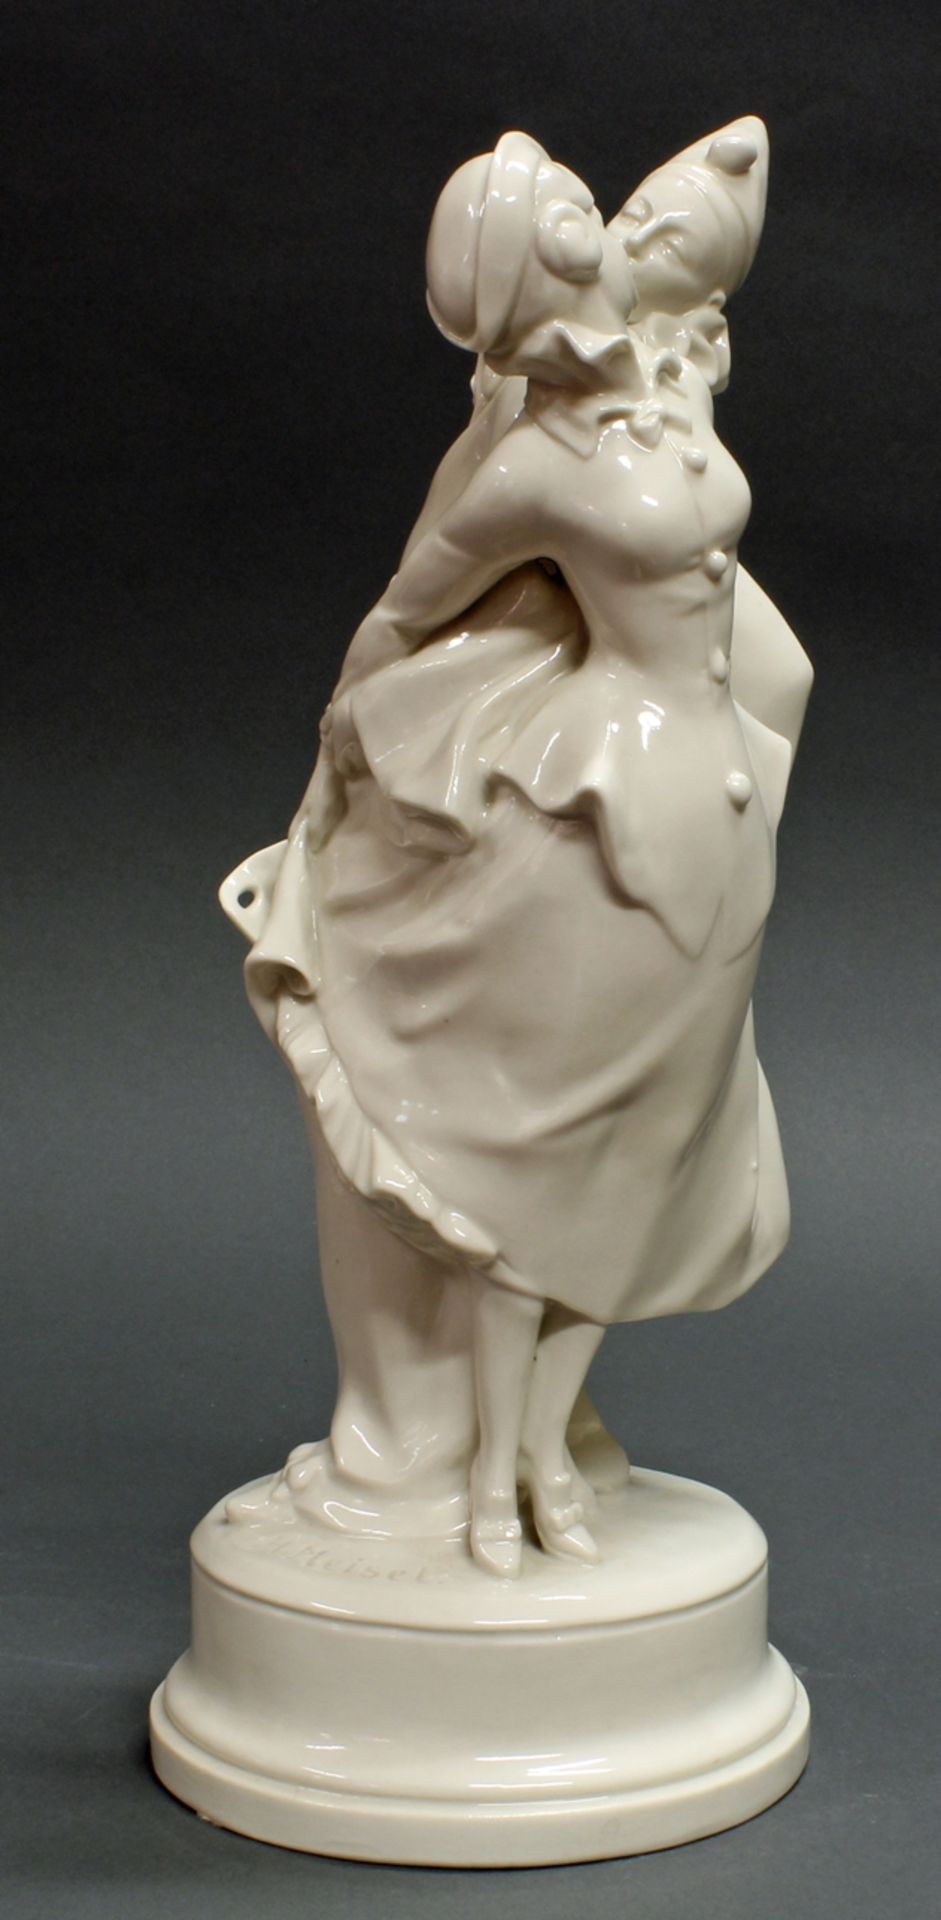 Porzellanfigur, "Demaskiert", Schwarzburger Werkstätten für Porzellankunst, 2. Wahl, Modellnummer U